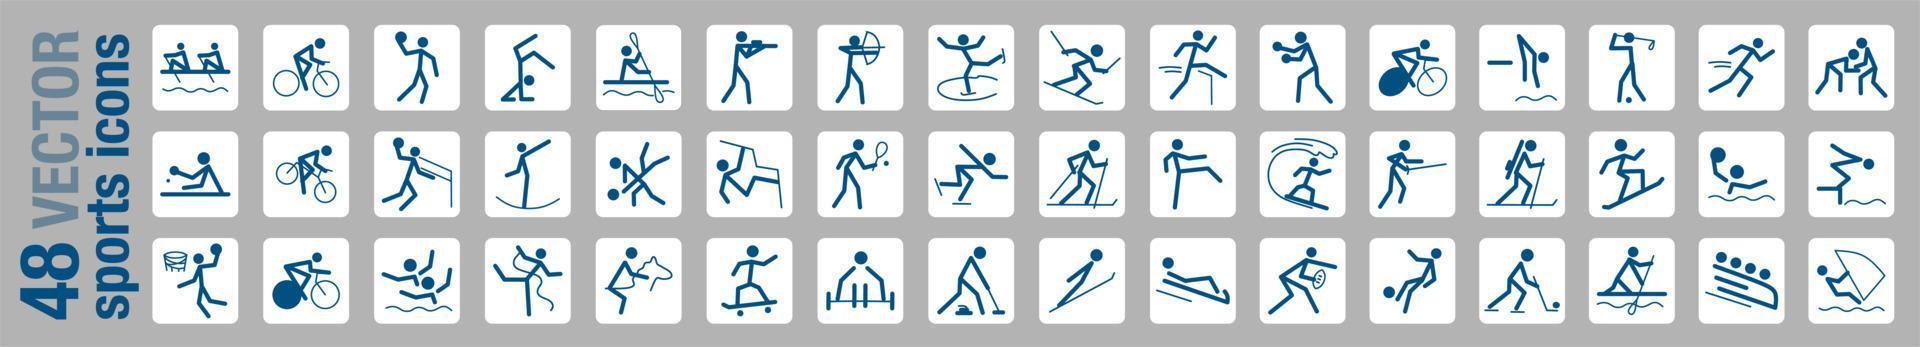 um conjunto de 48 ícones dedicados a esportes e jogos, ilustração vetorial em estilo simples vetor